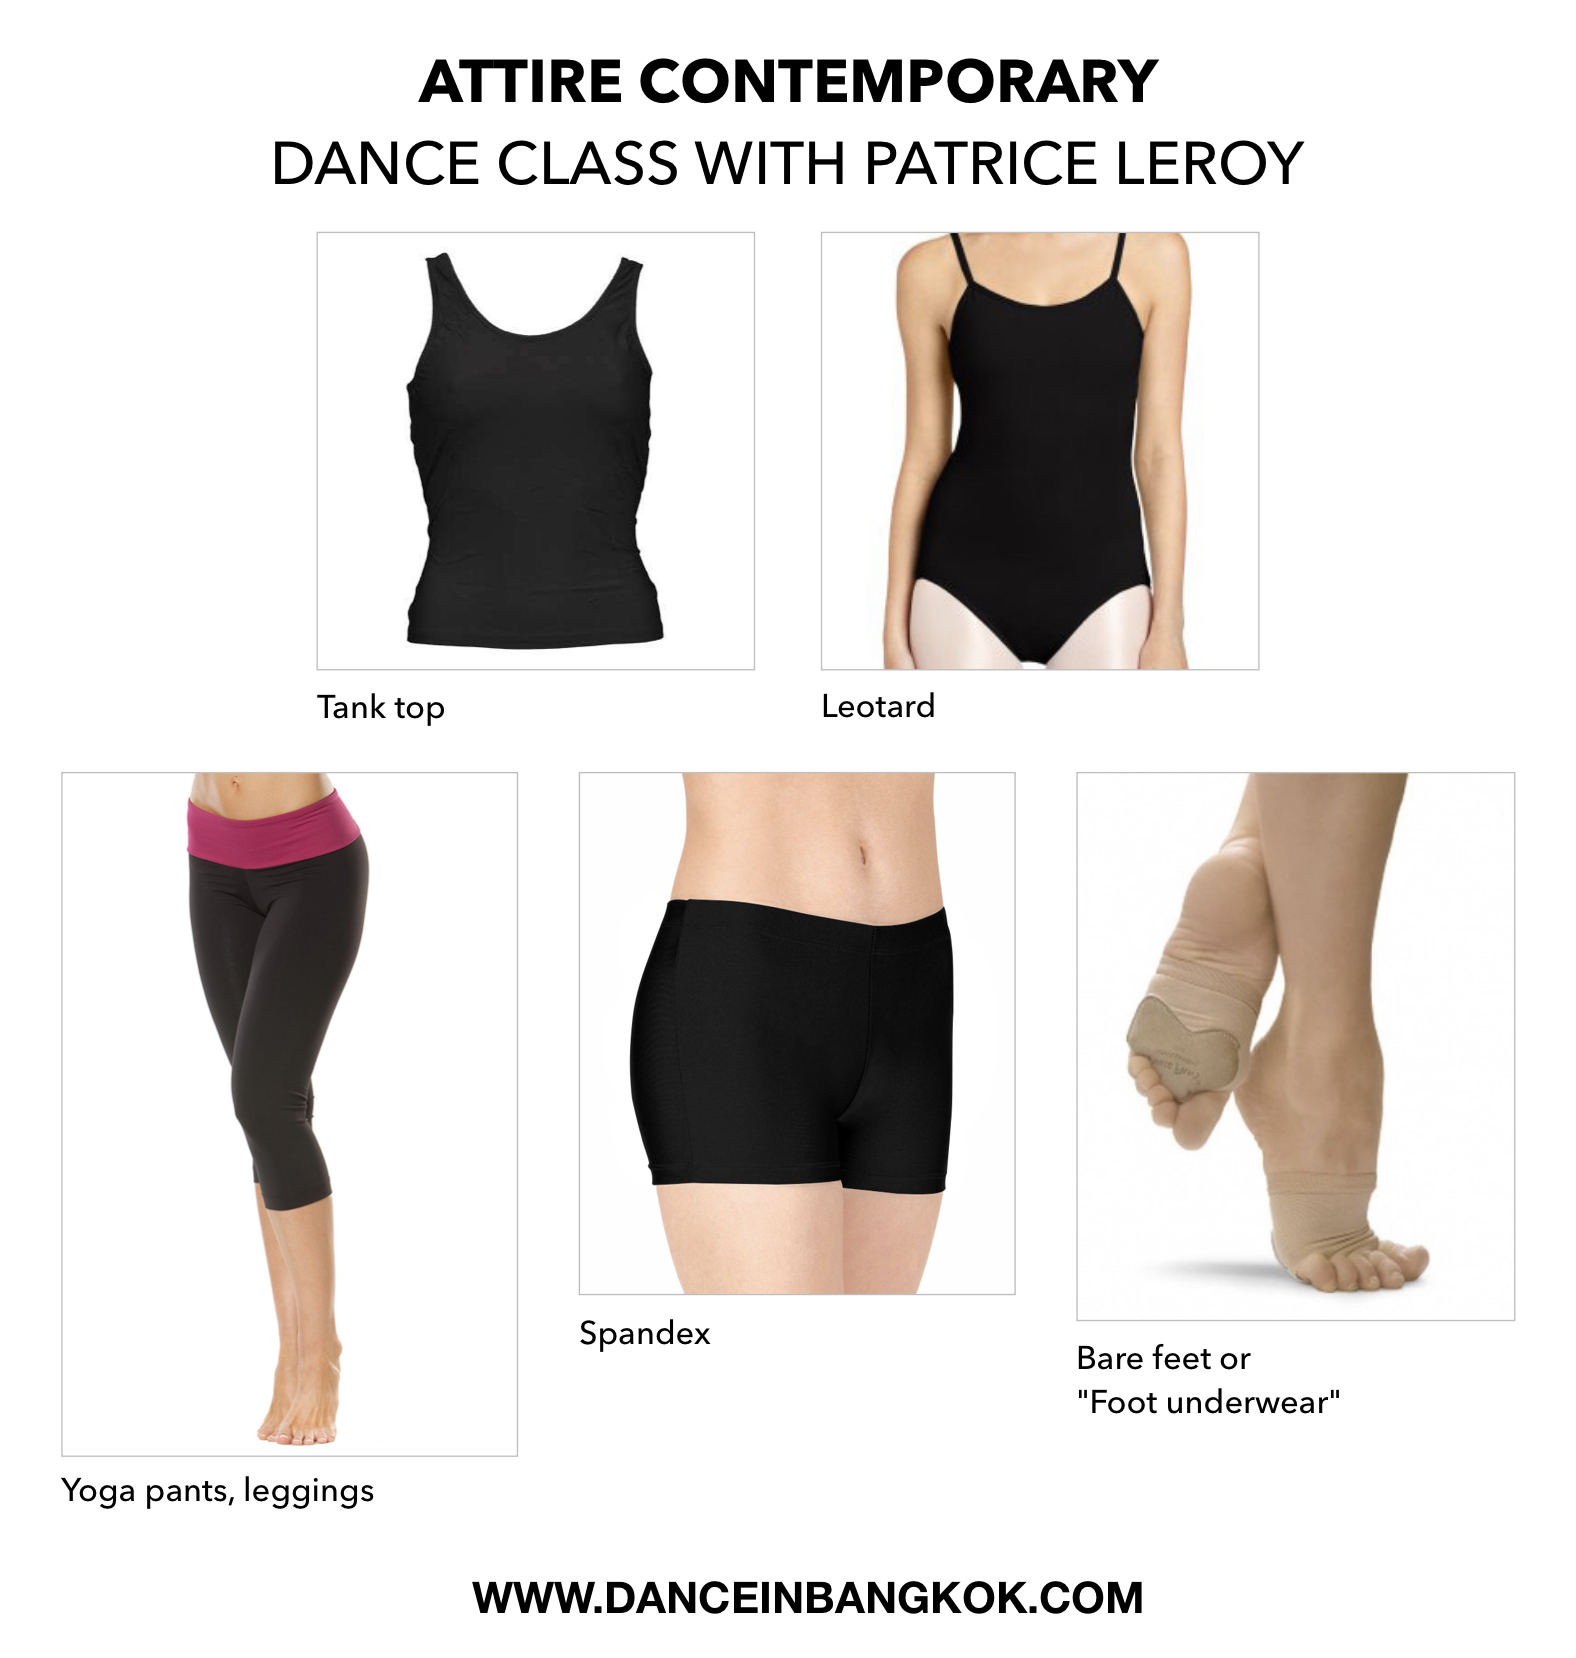 Attire Contemporary Dance